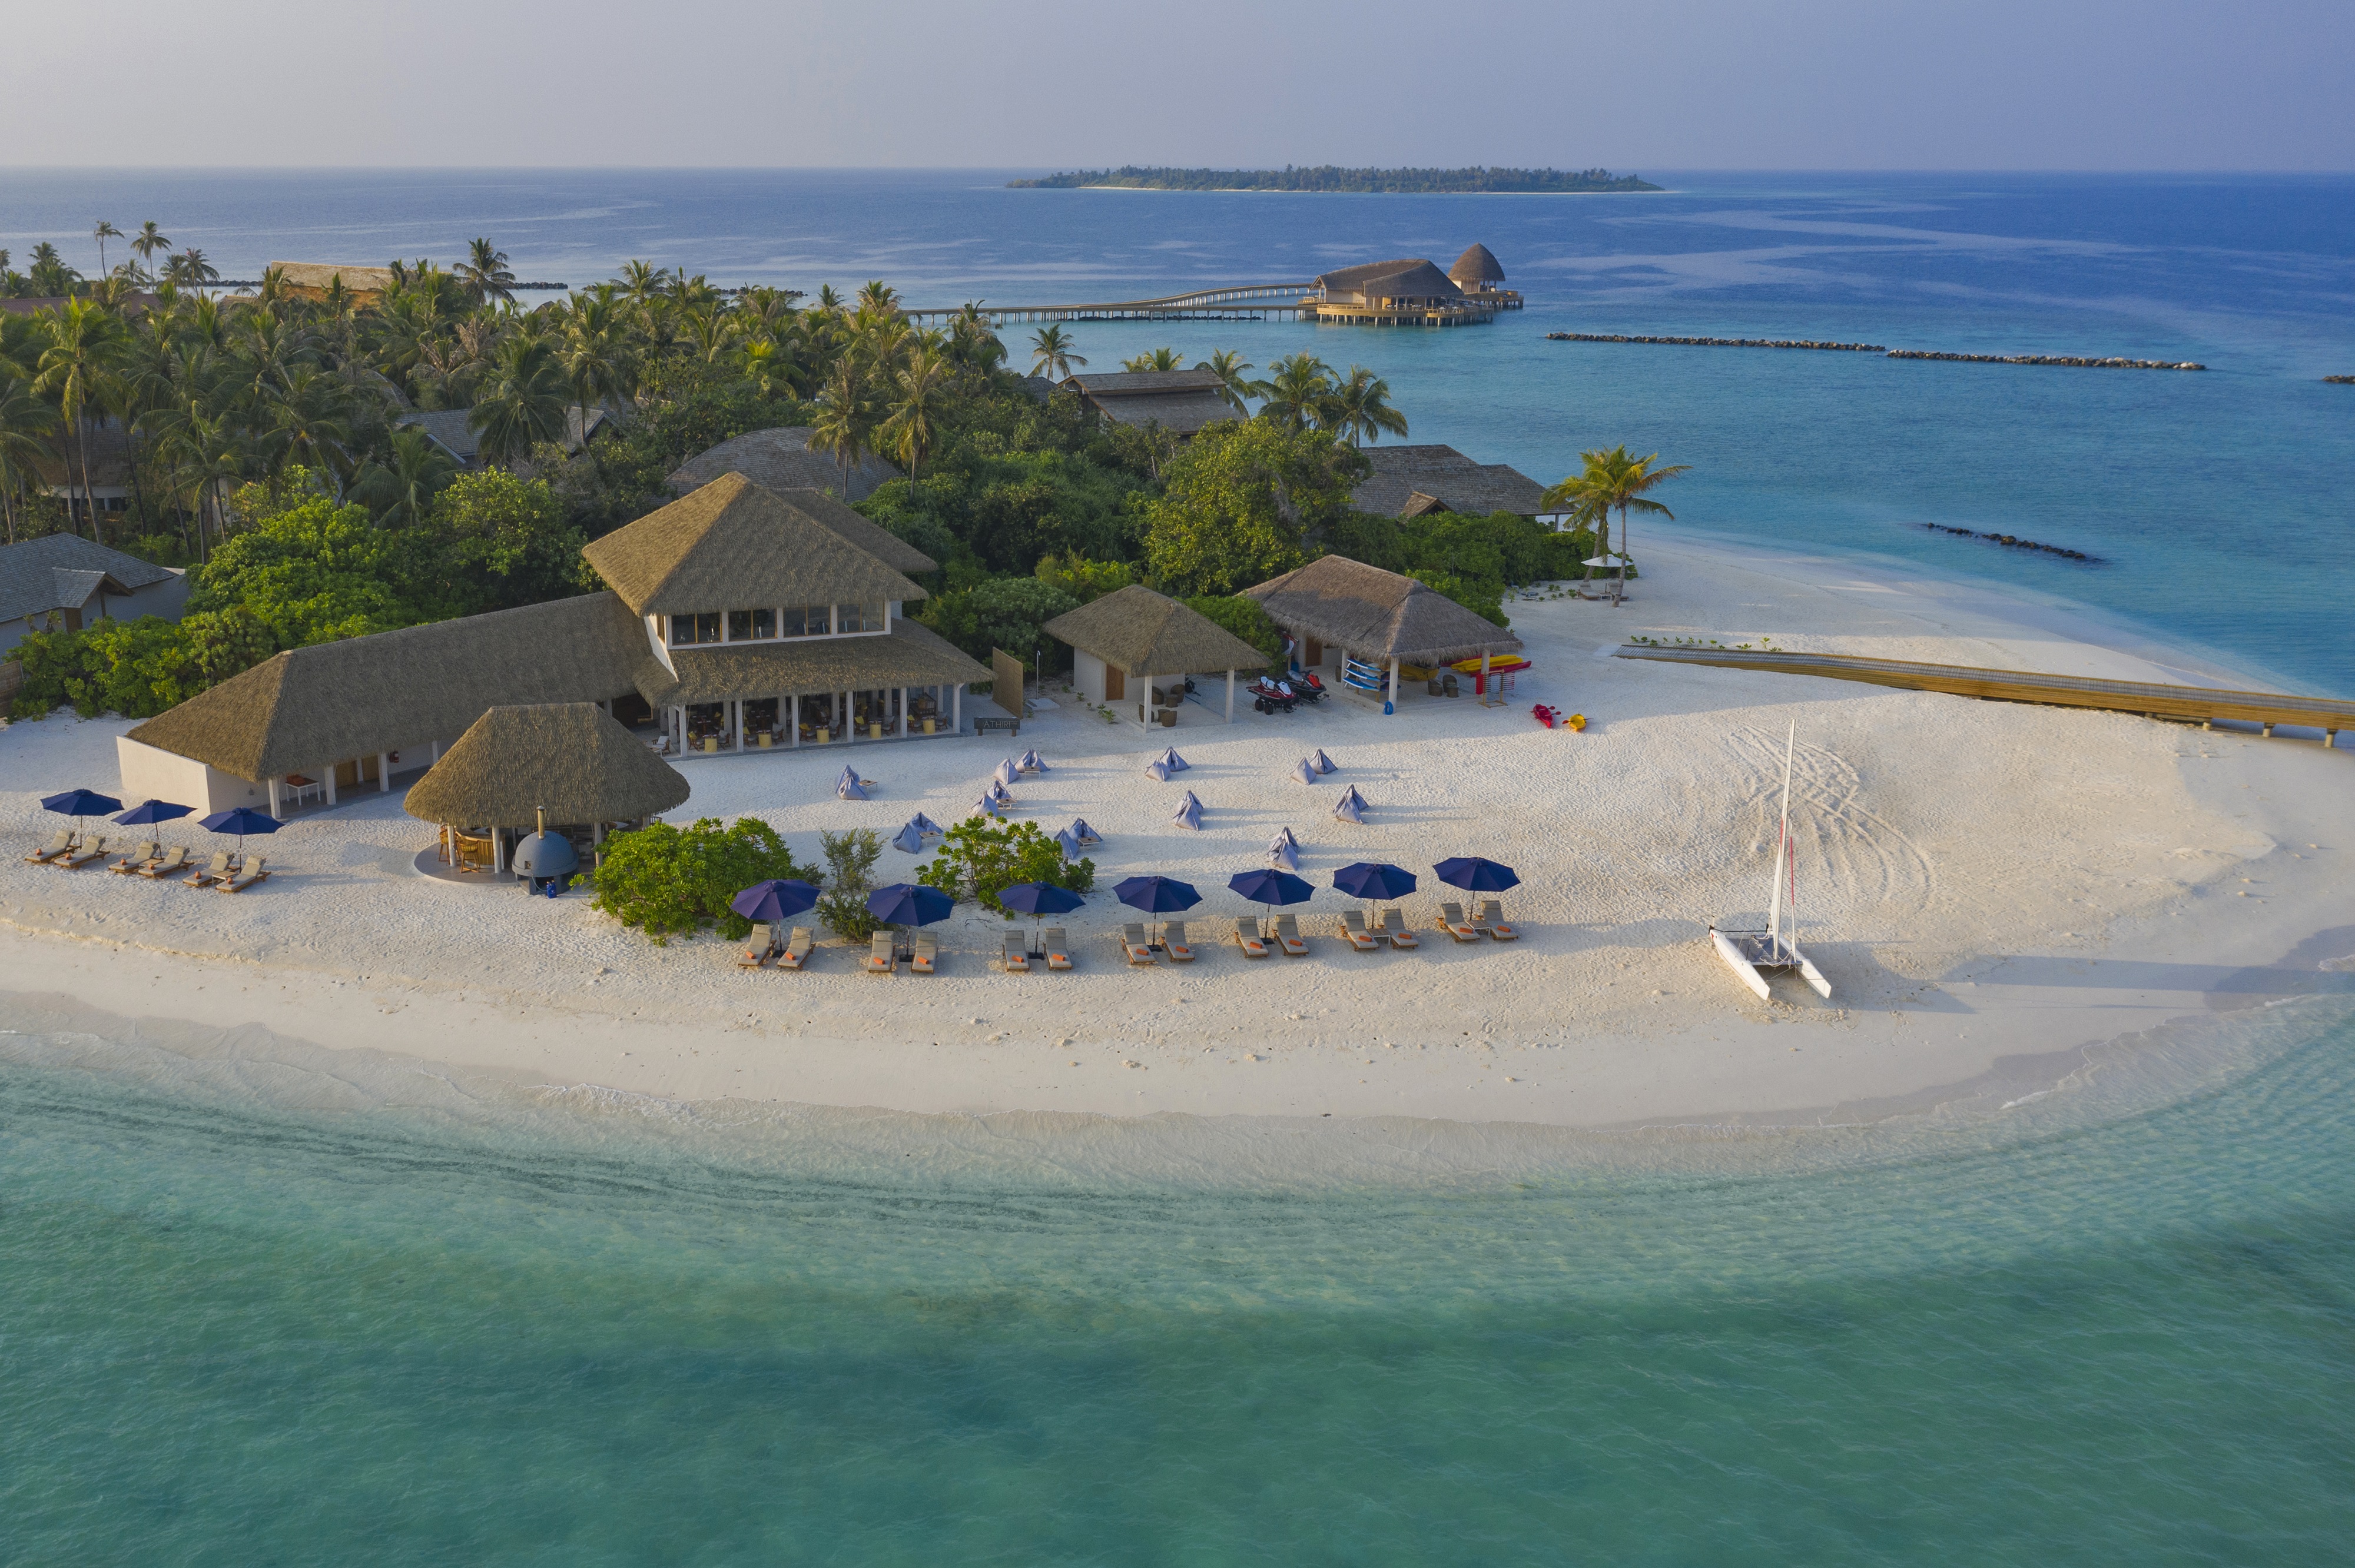 Foto af Faarufushi Resort island - populært sted blandt afslapningskendere